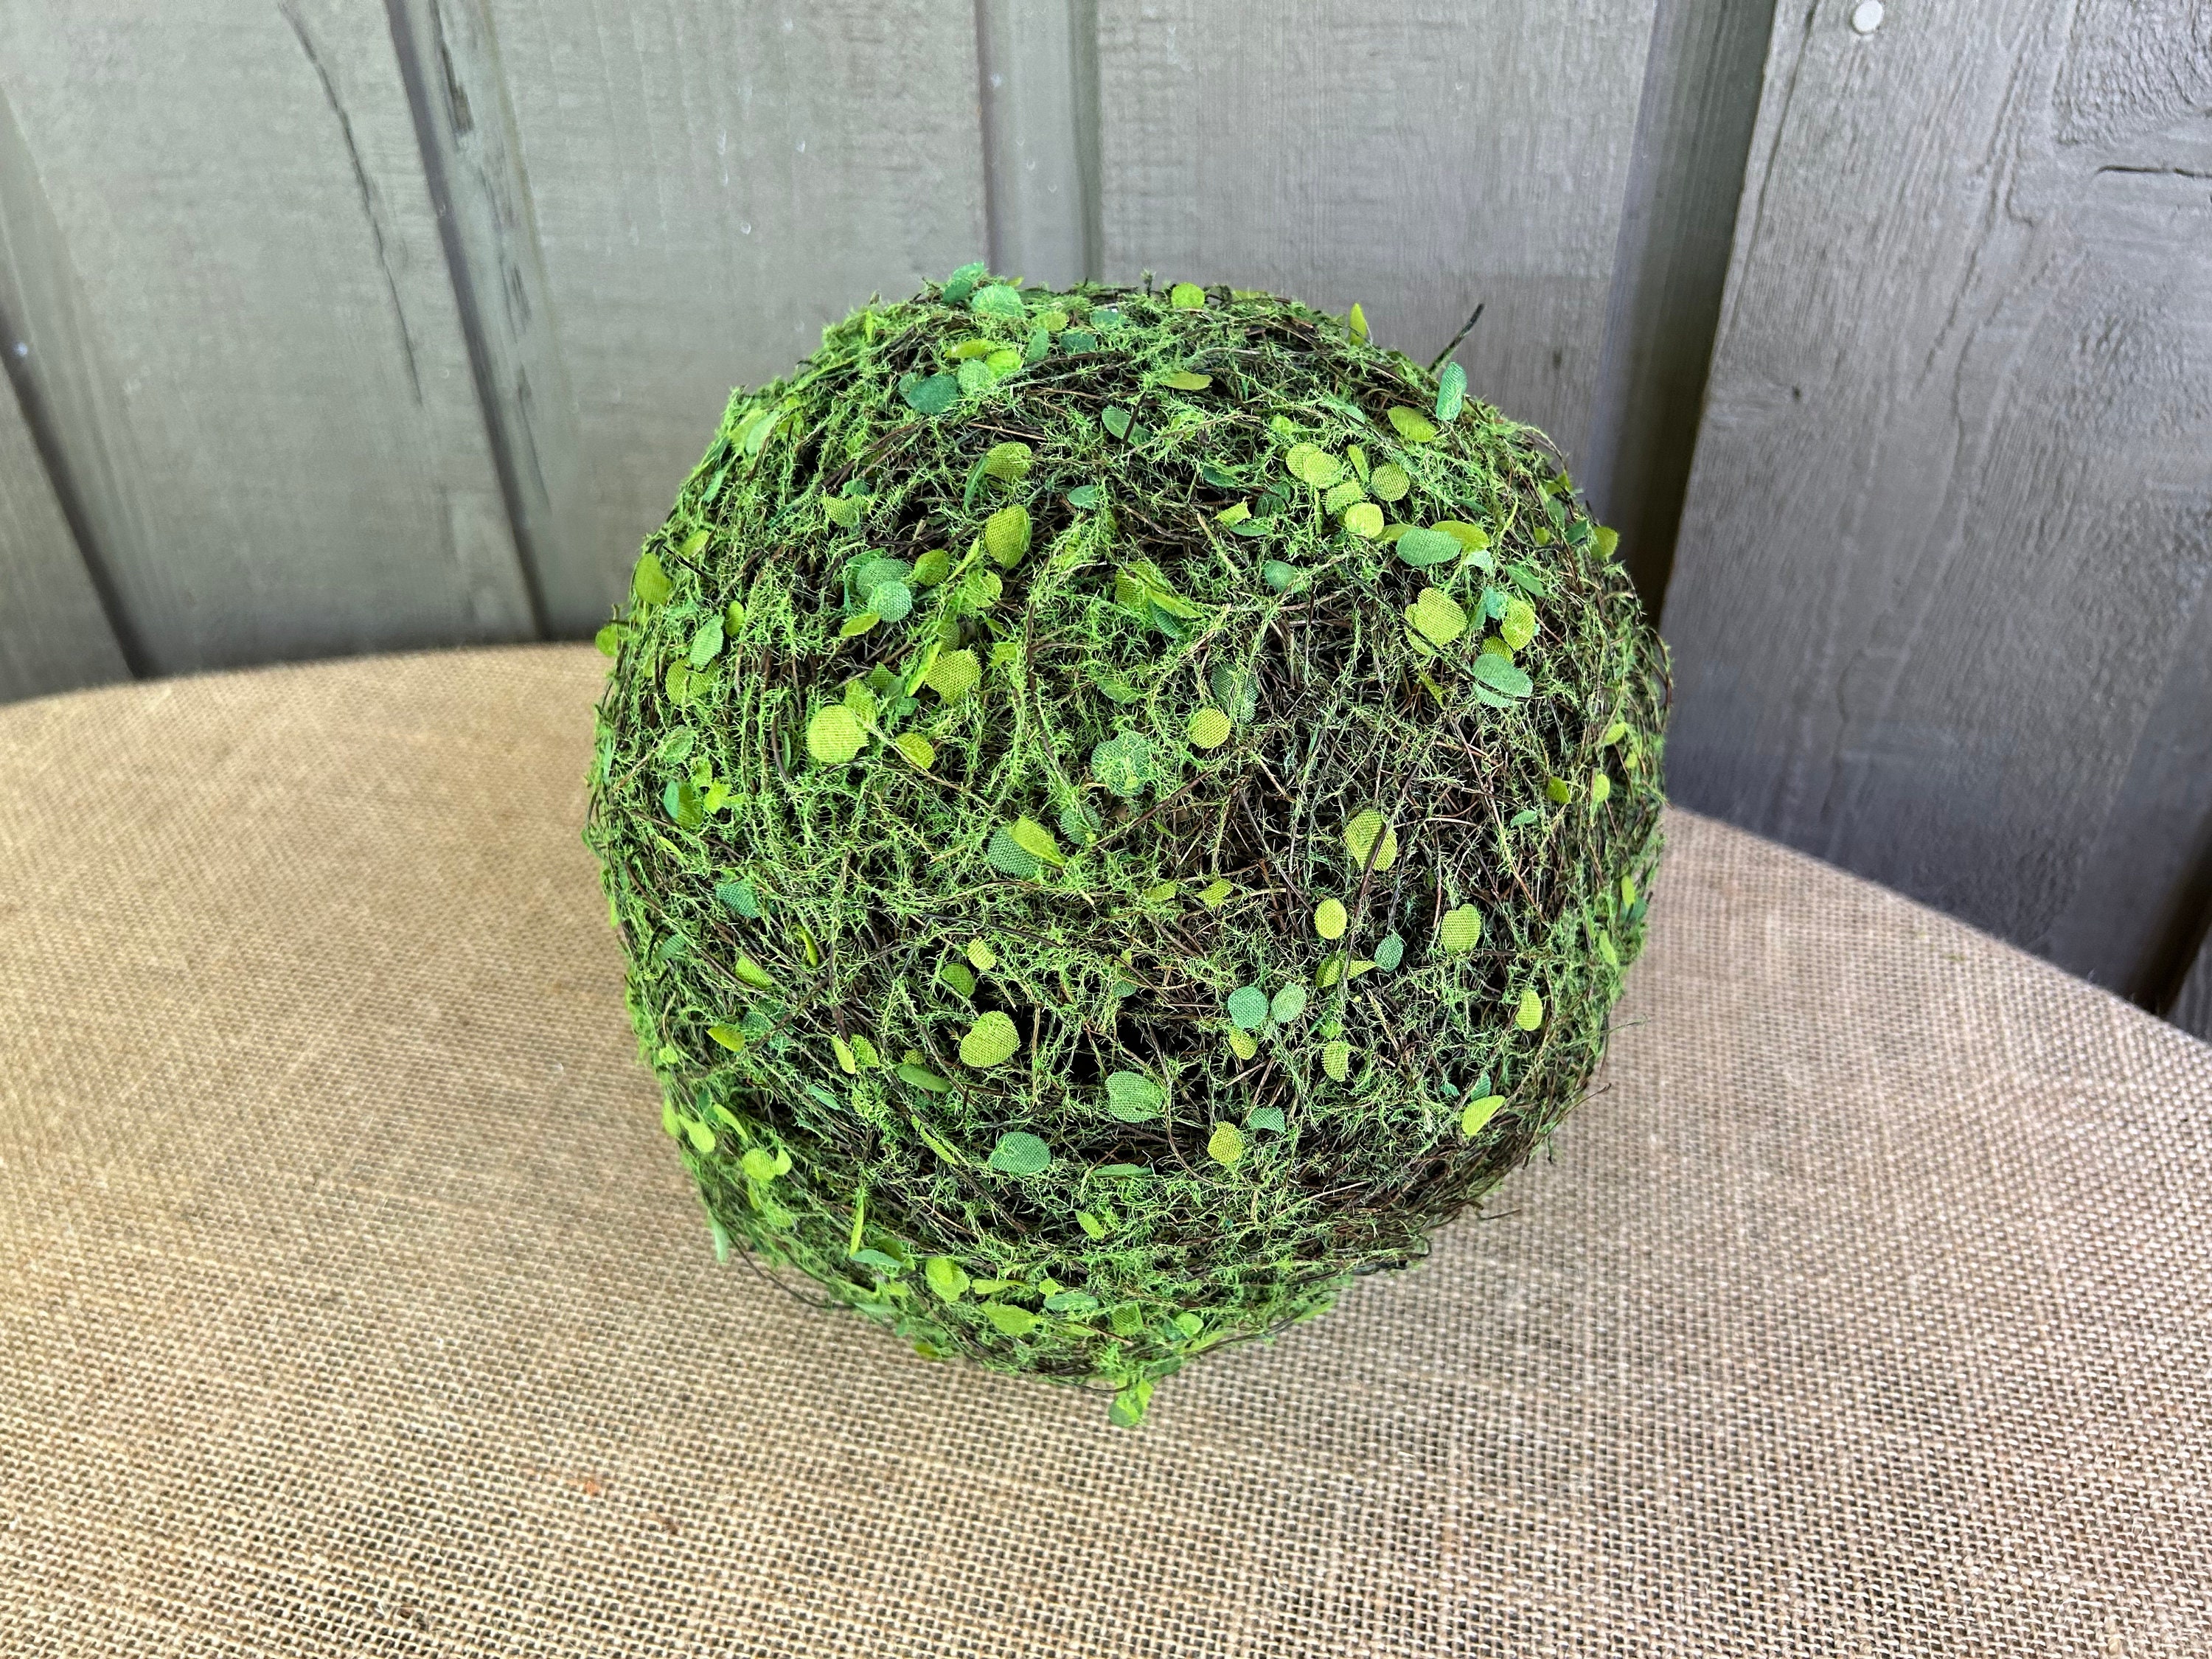 Artificial Moss Balls, Silk Moss, Faux Large Moss Balls